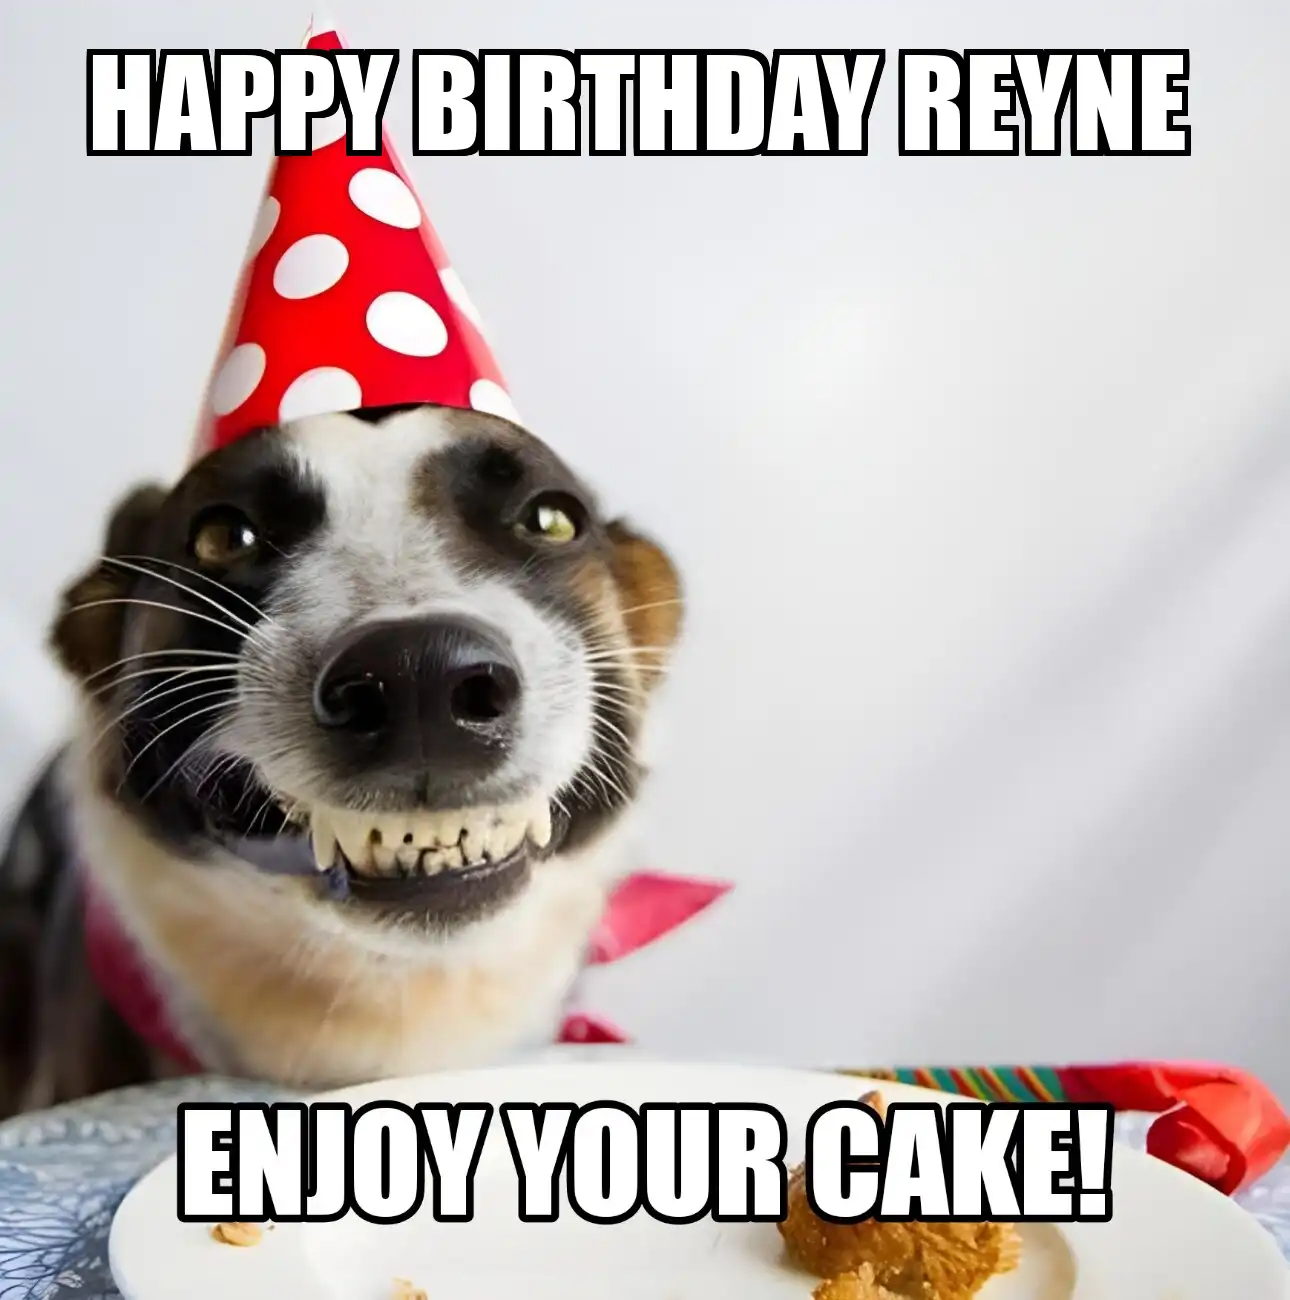 Happy Birthday Reyne Enjoy Your Cake Dog Meme